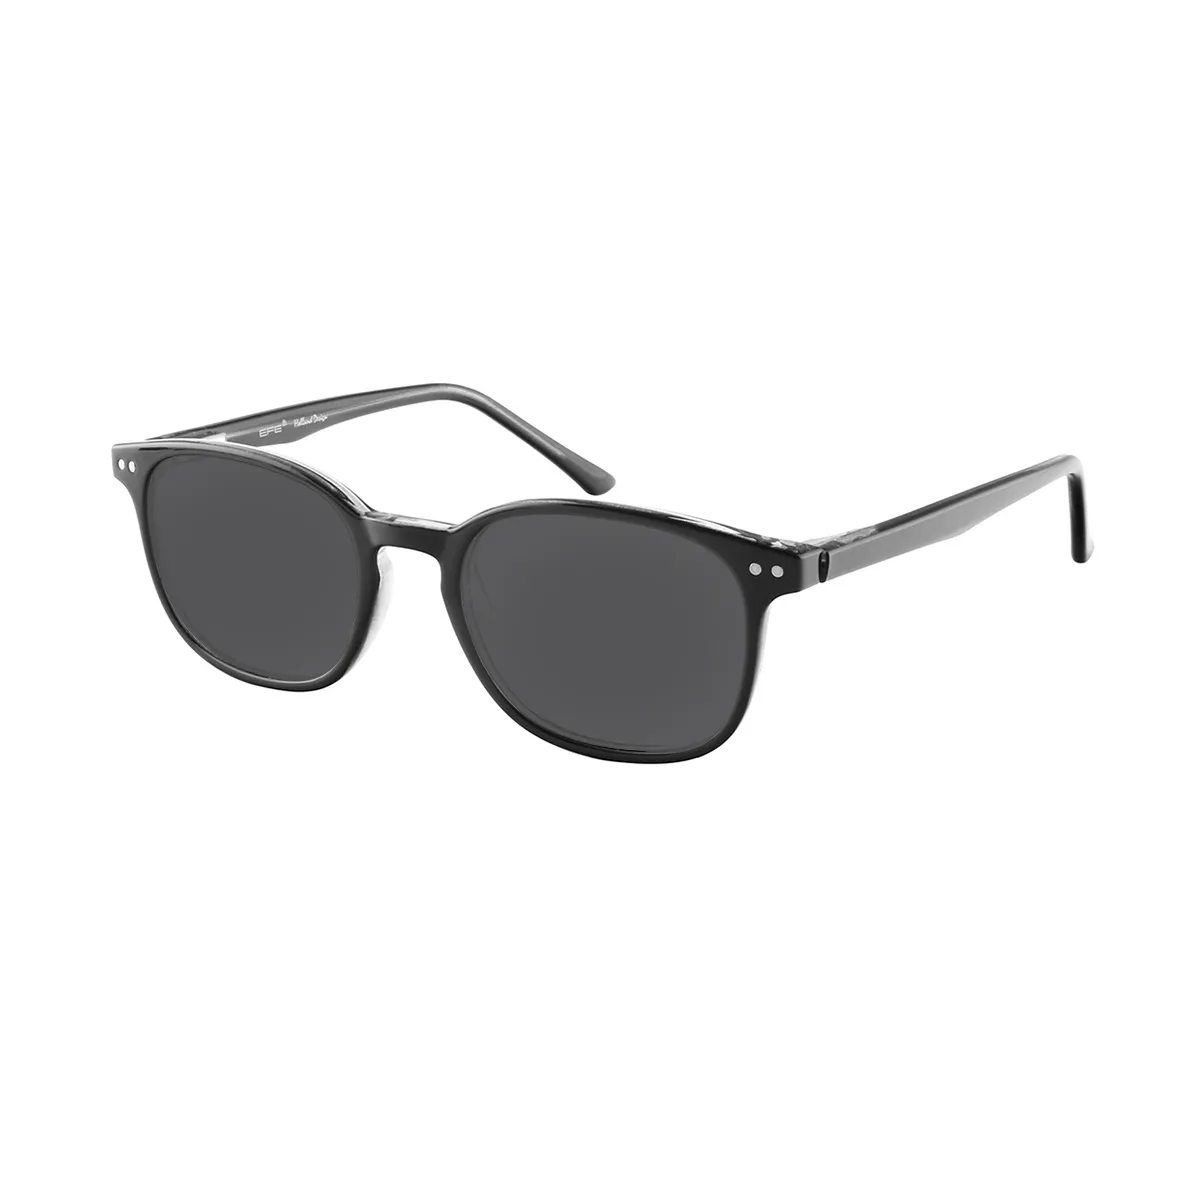 Marin - Rectangle Black Sunglasses for Men & Women